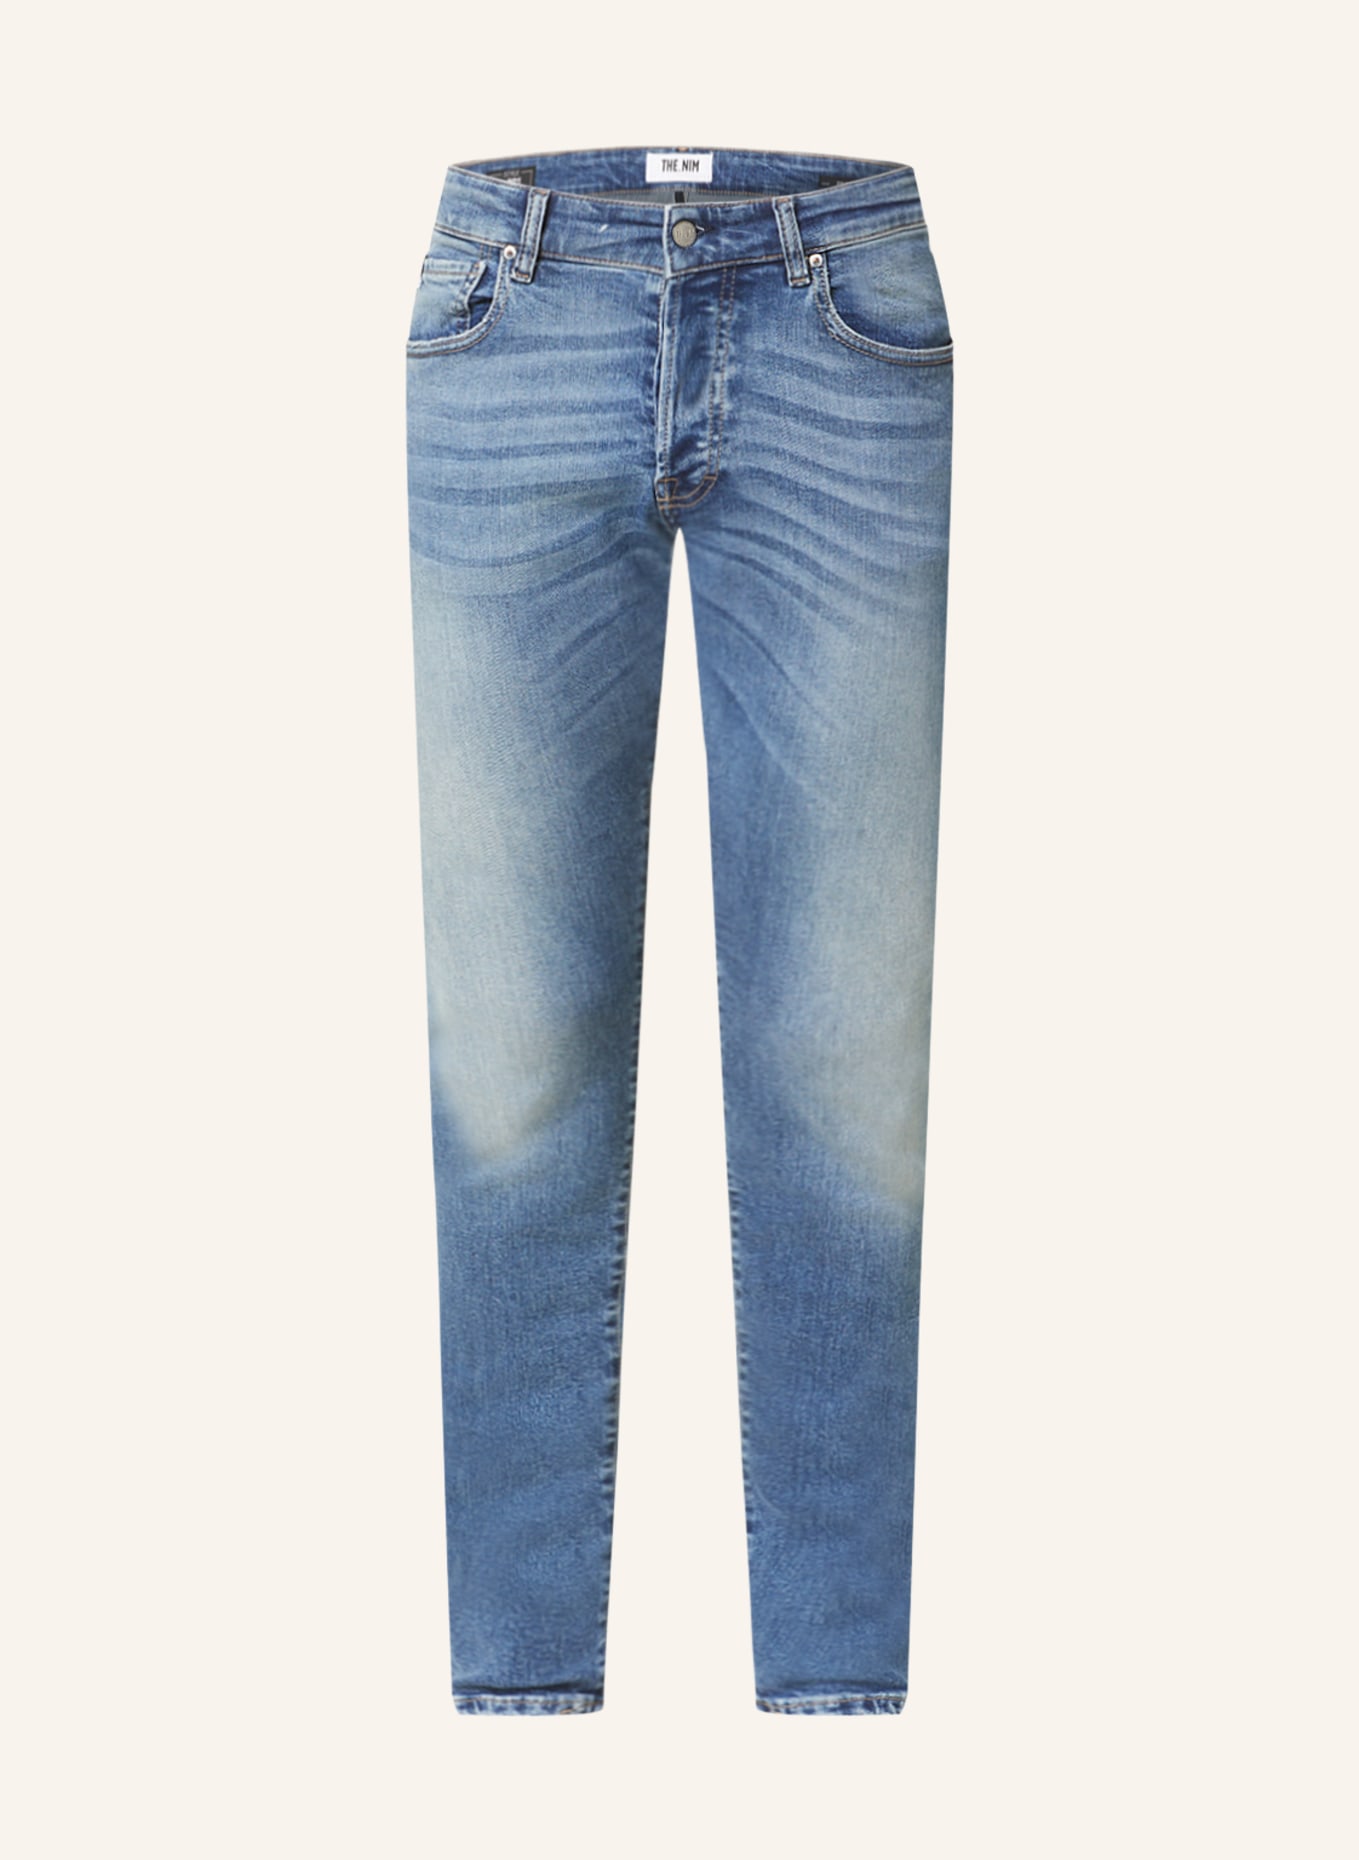 THE.NIM STANDARD Jeans DYLAN Slim Fit, Farbe: W432-MDM MEDIUM (Bild 1)